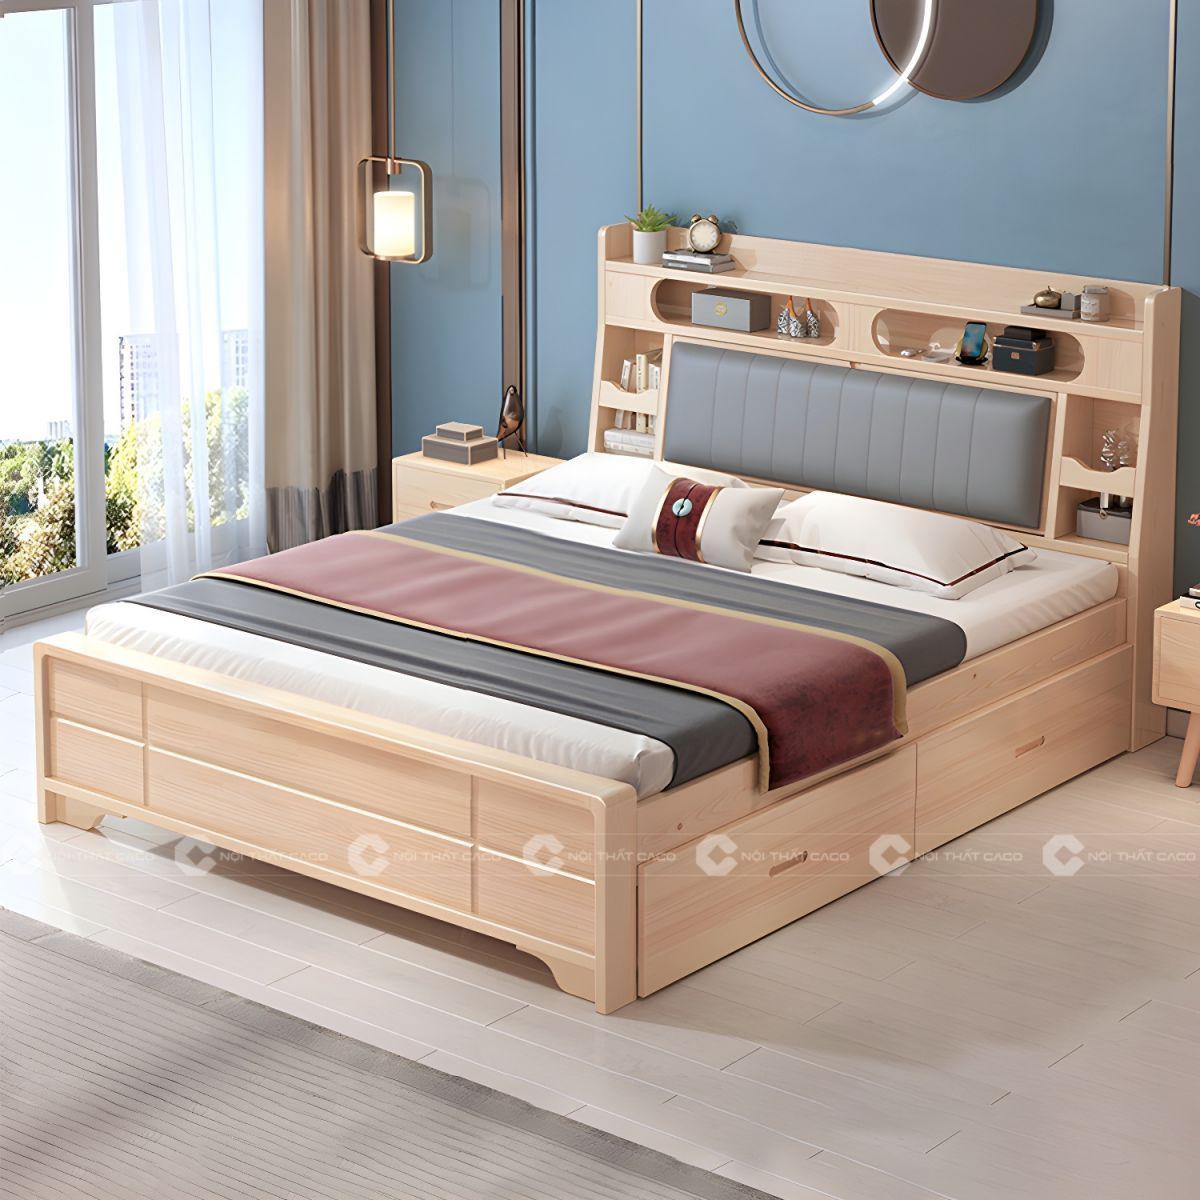 Giường ngủ gỗ tự nhiên có hộc kéo trữ đồ